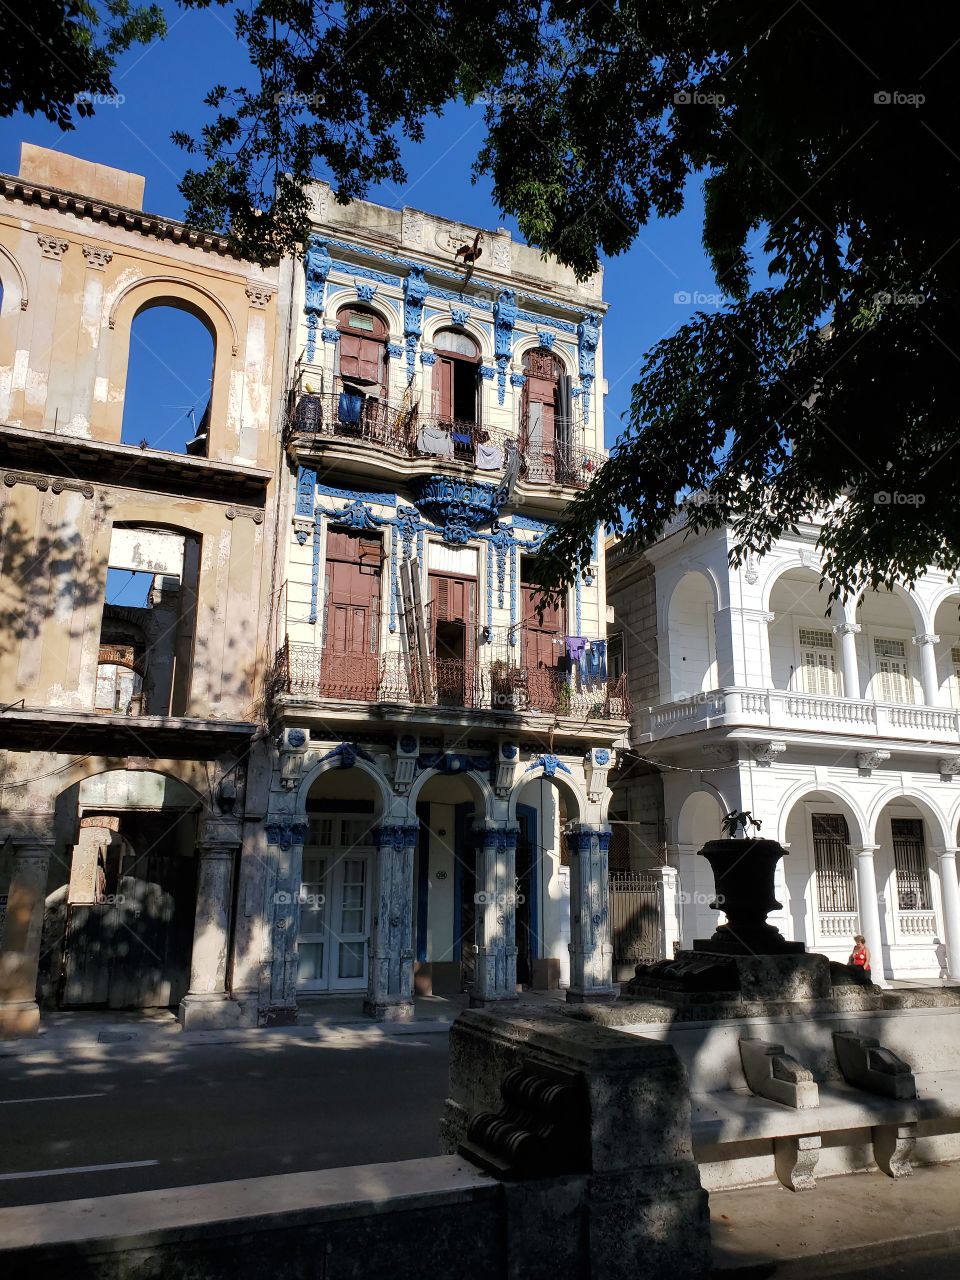 Pardo in Havana